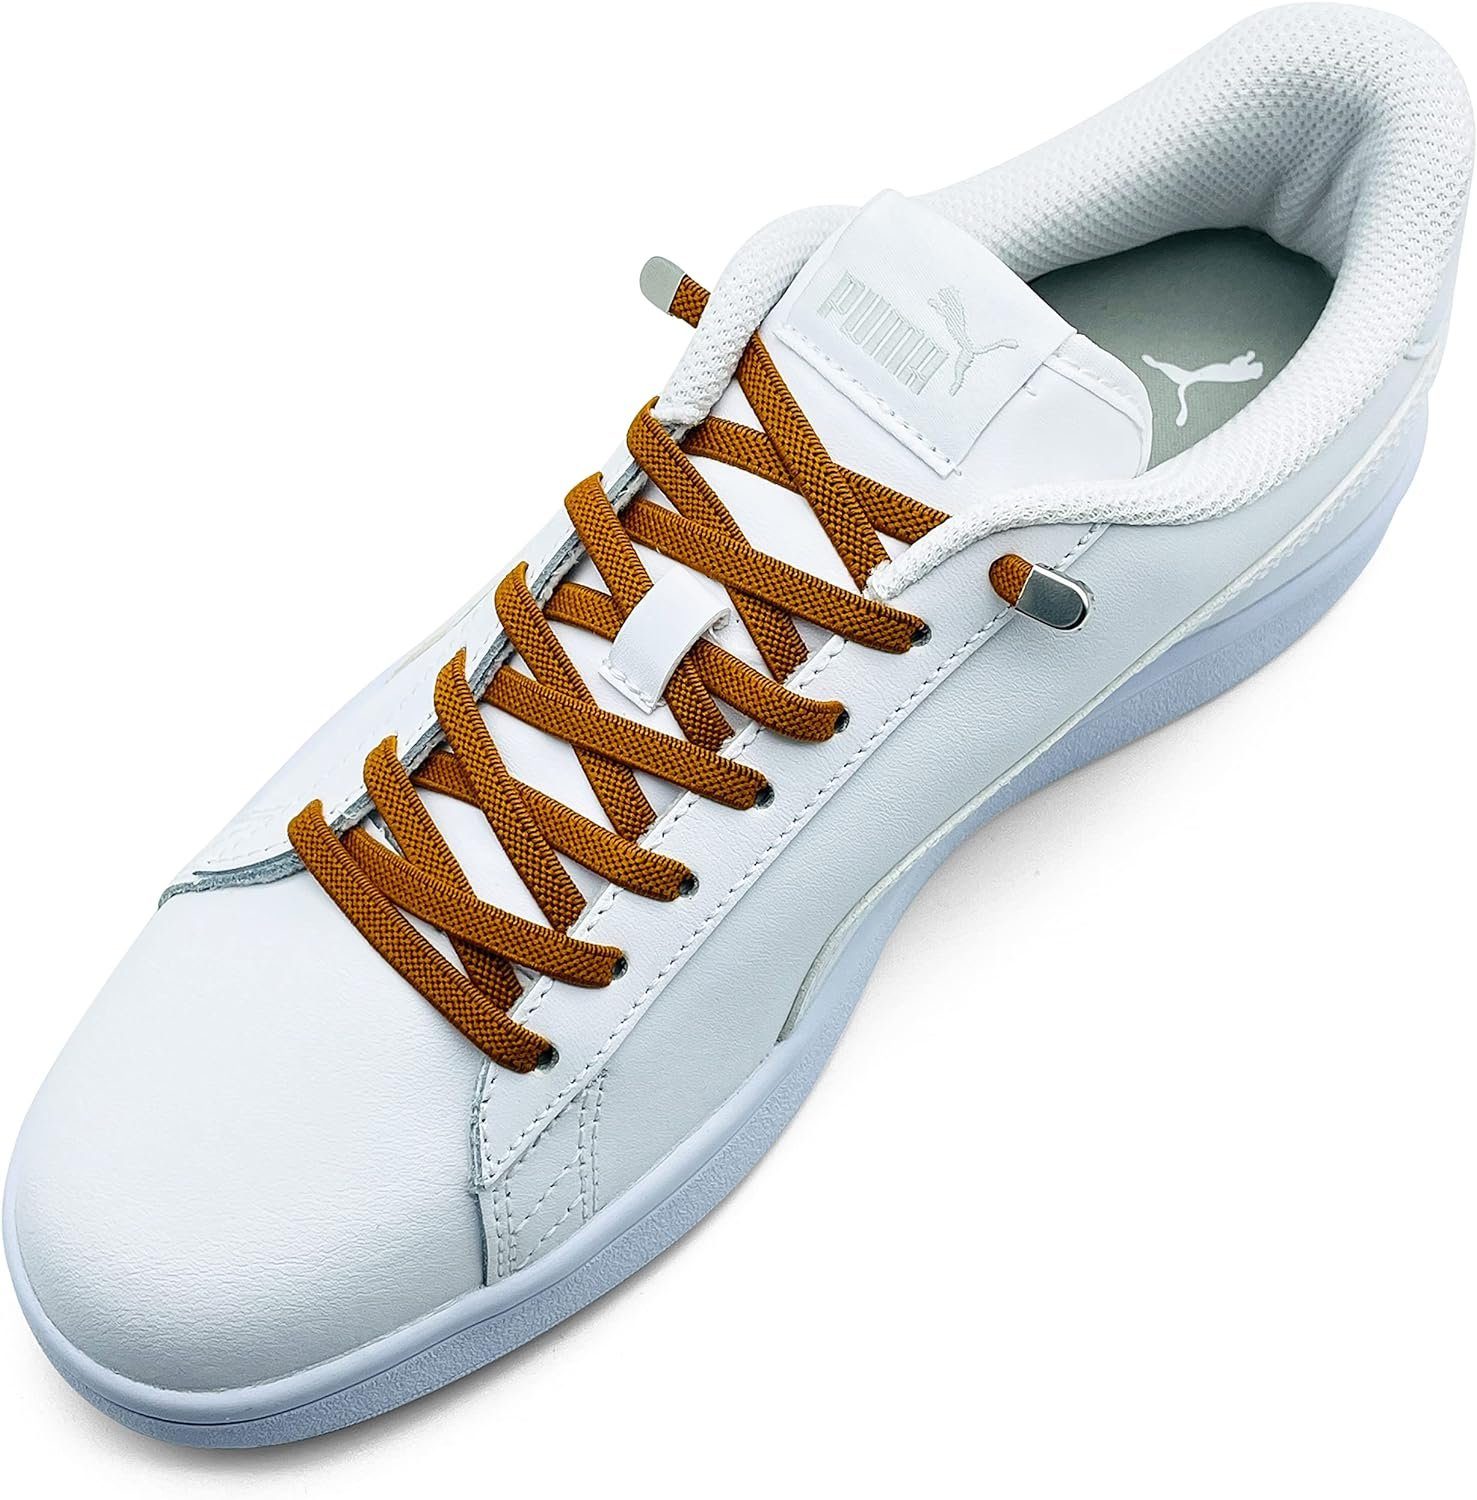 ELANOX Schnürsenkel 4 Stück für 2 Paar Schuhe elastische Schnürsenkel mit Clips, inkl. Enden (Clips) - 8 St. in silber coffee